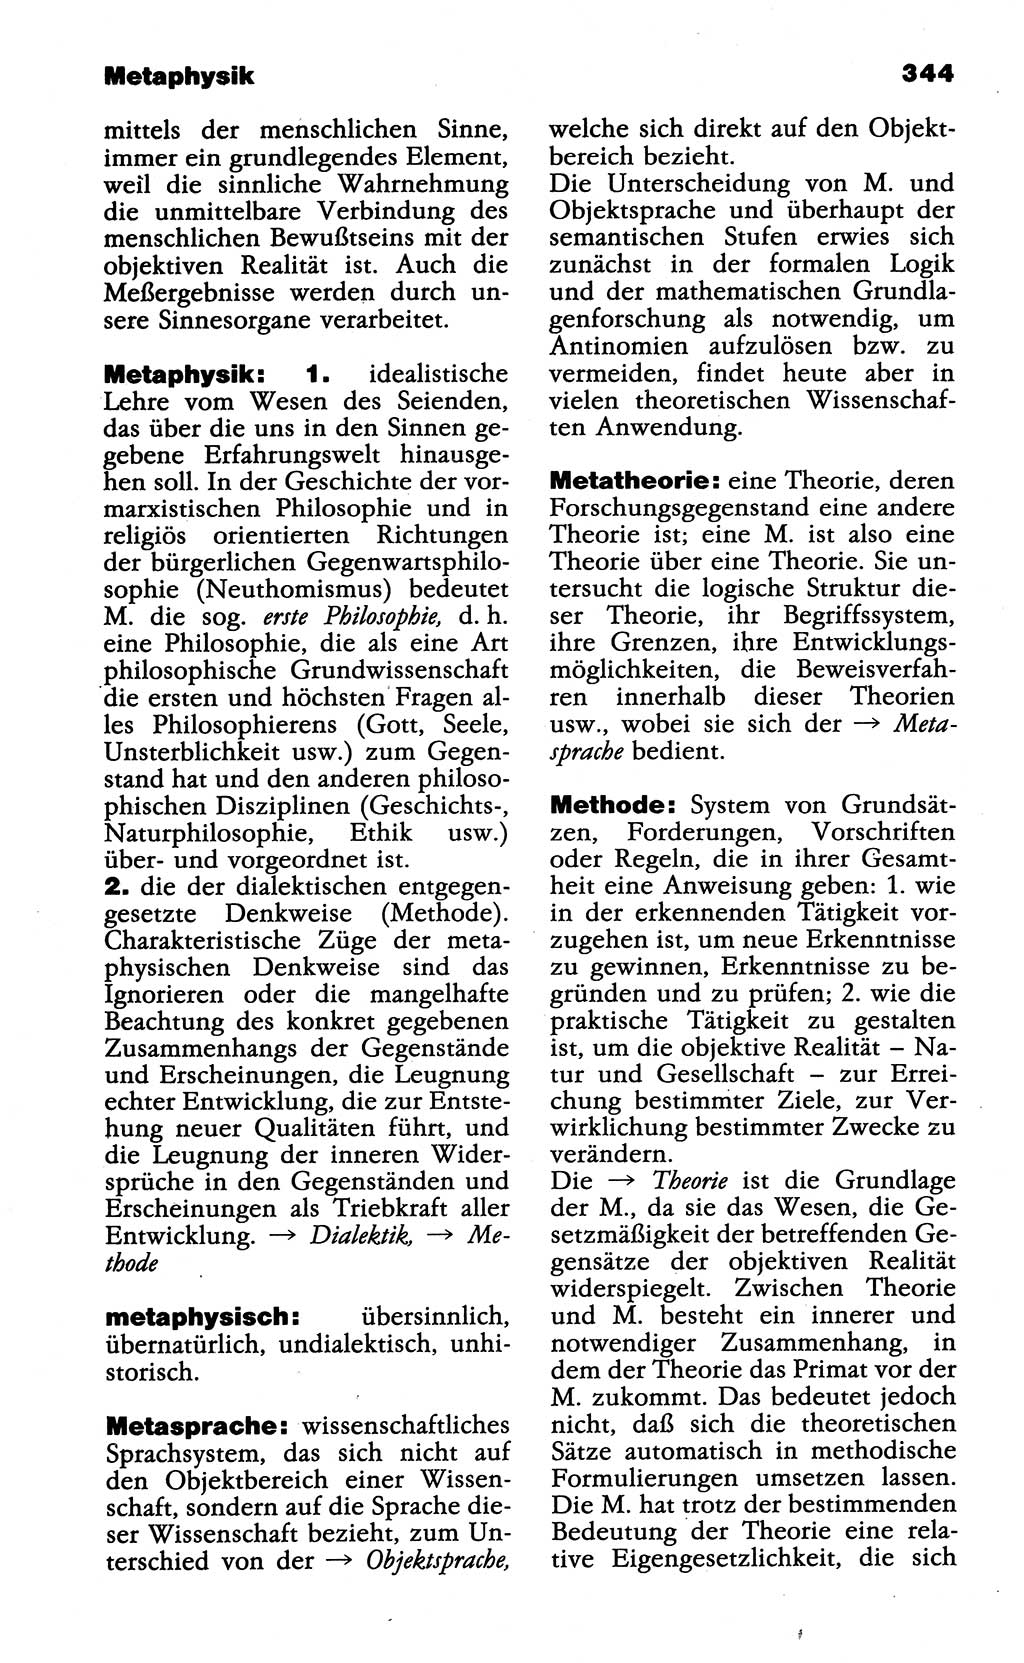 Wörterbuch der marxistisch-leninistischen Philosophie [Deutsche Demokratische Republik (DDR)] 1985, Seite 344 (Wb. ML Phil. DDR 1985, S. 344)